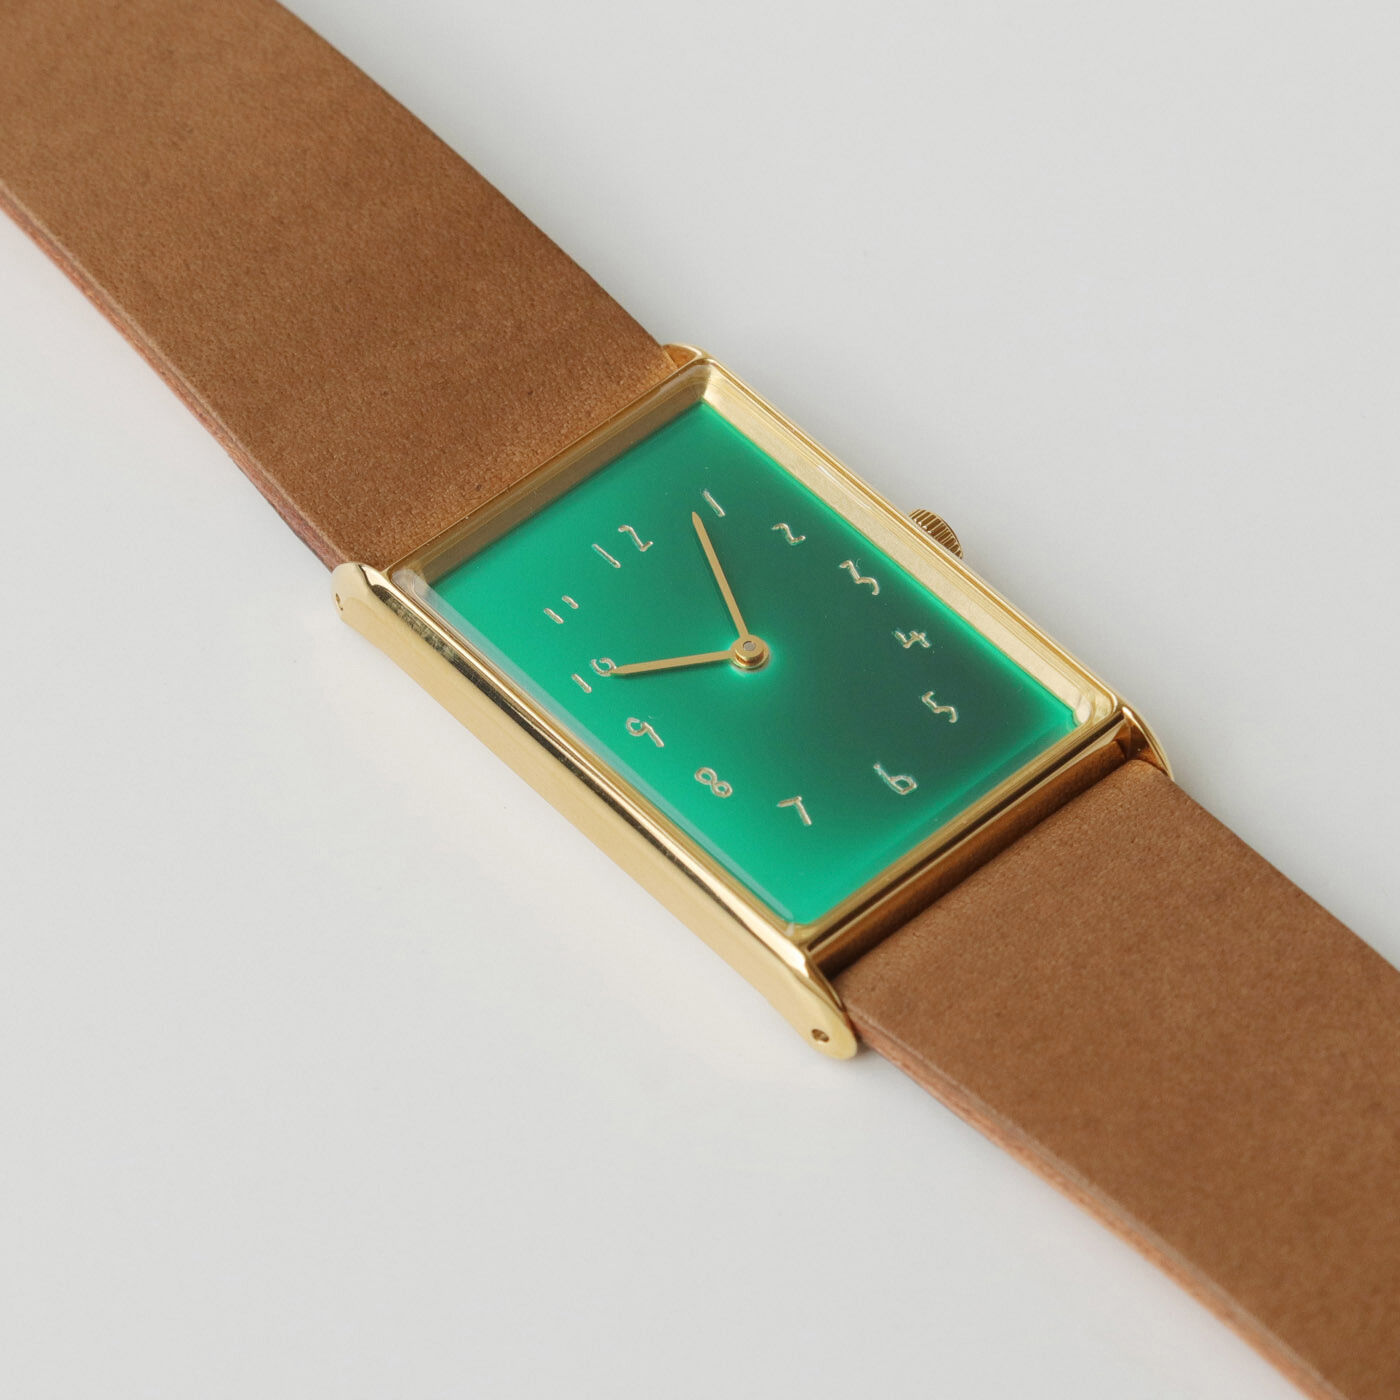 ＆Stories|金沢の時計職人が手掛けた 聖なる泉の翠色に見惚れる腕時計〈ブラウン〉[時計：日本製]|神秘的な濃淡のグラデーションは、吸い込まれそうな美しさ。